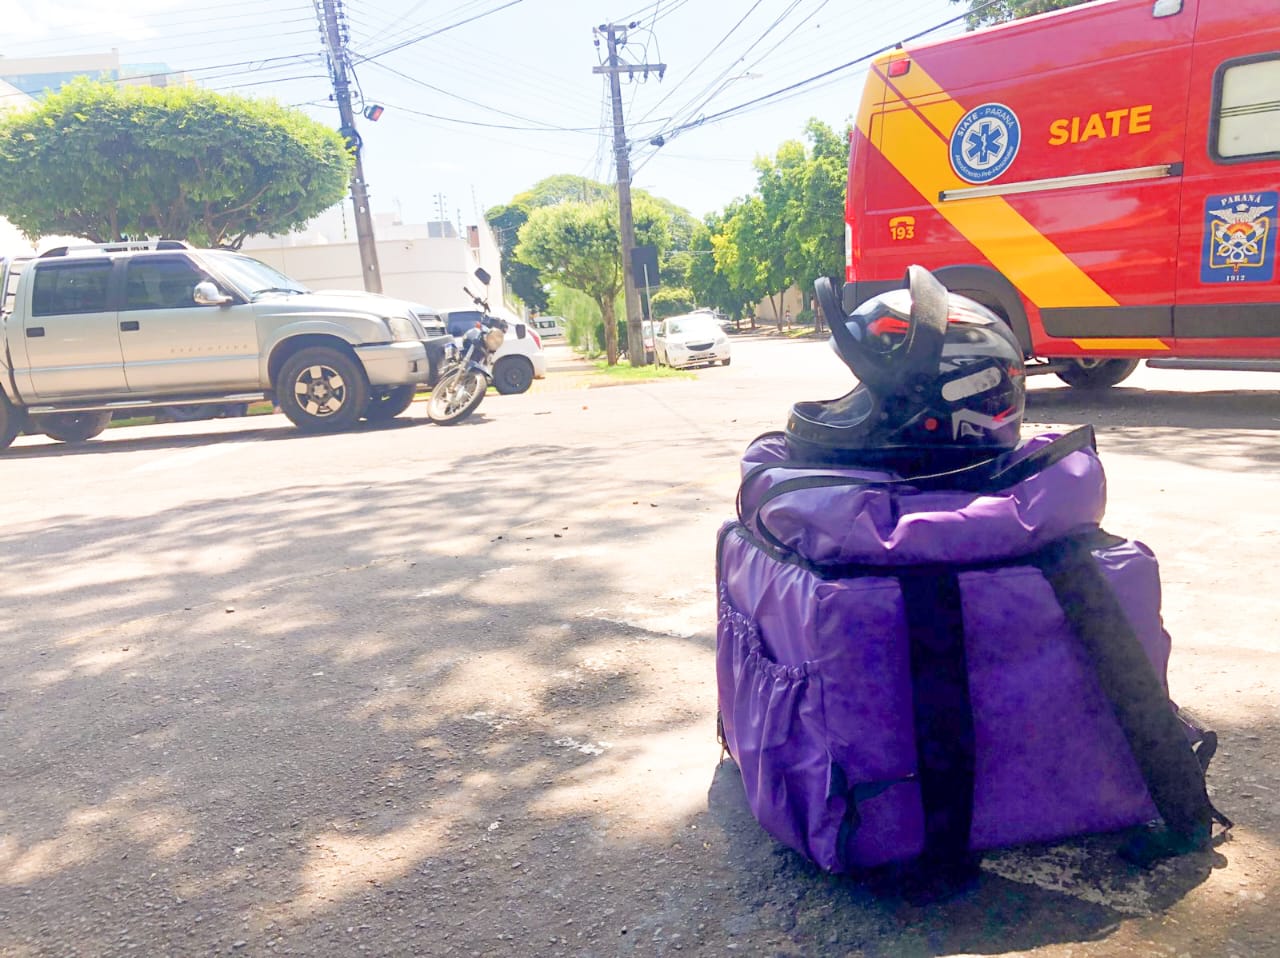 Entregador fica ferido na colisão entre moto e caminhonete no centro de Umuarama